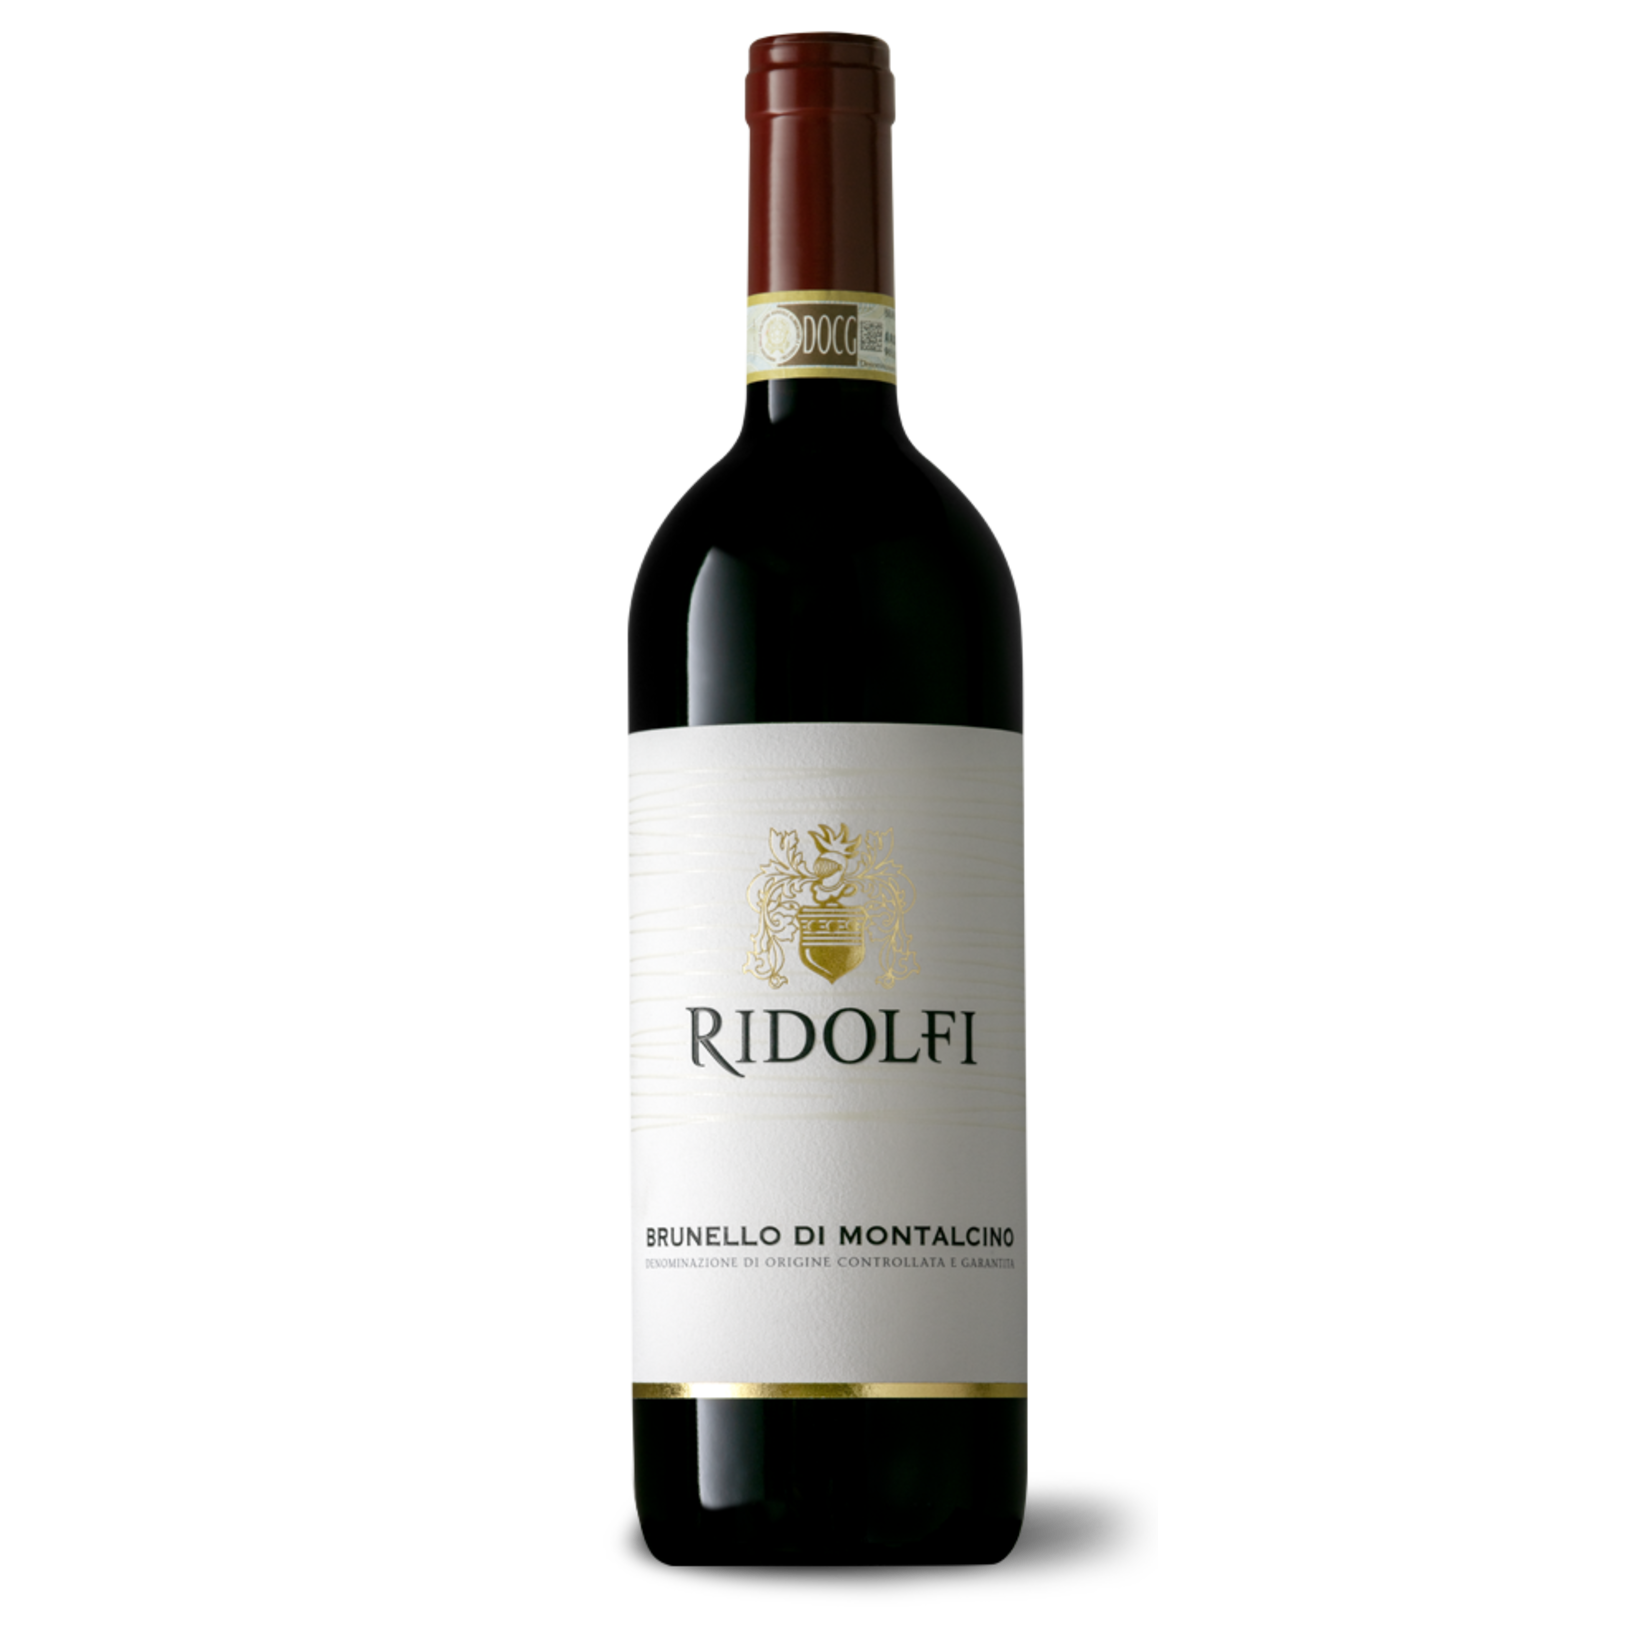 Wine Ridolfi Brunello di Montalcino 2016